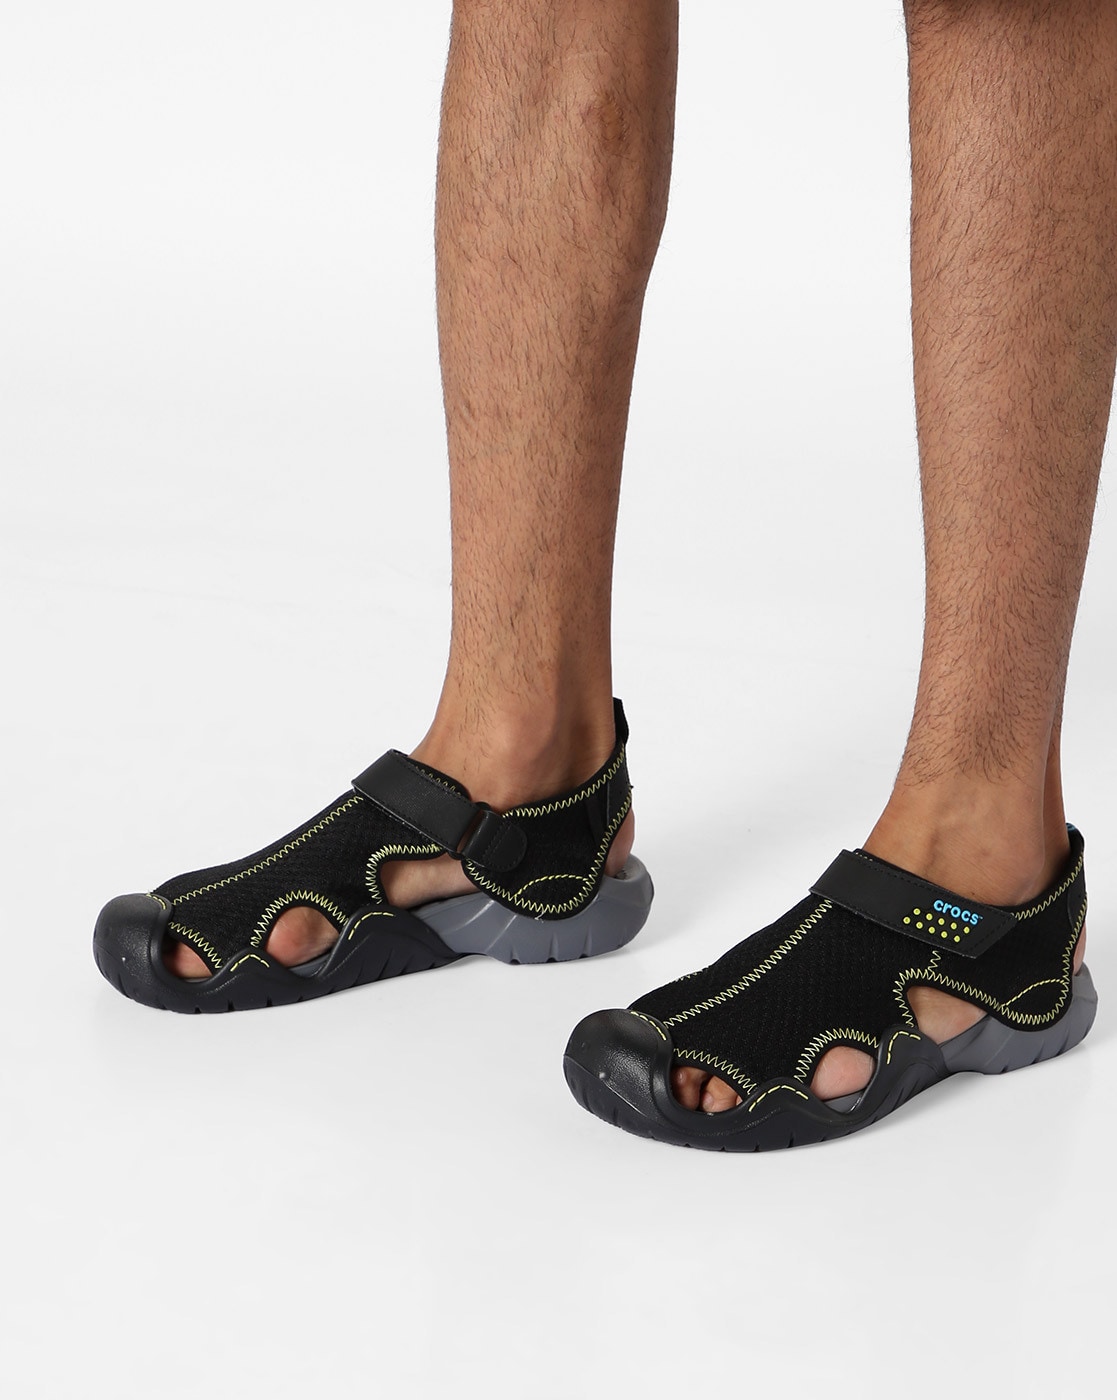 crocs casual sandals